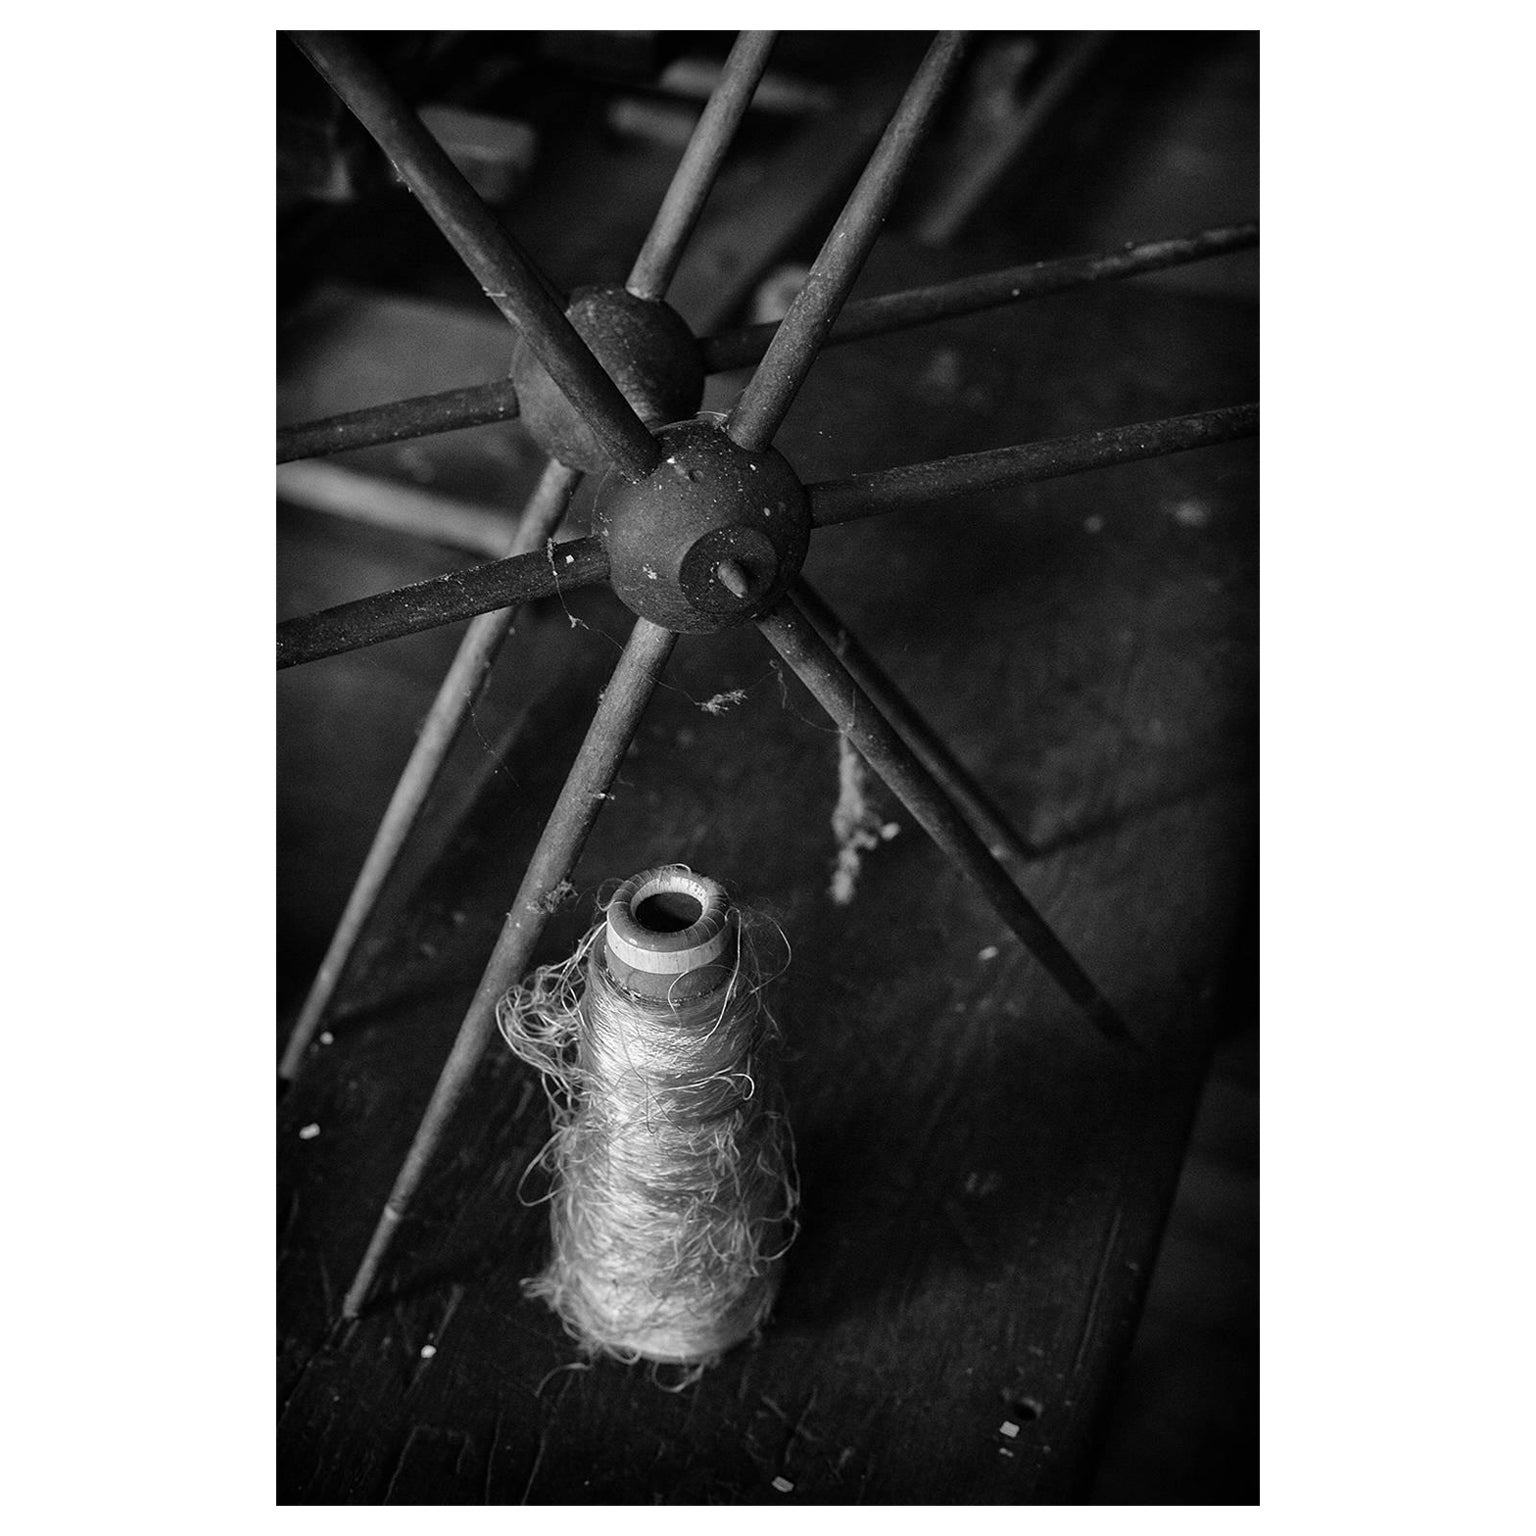 "Thread", noir et blanc, abandonné, usine de soie, industriel, vintage, photographie.